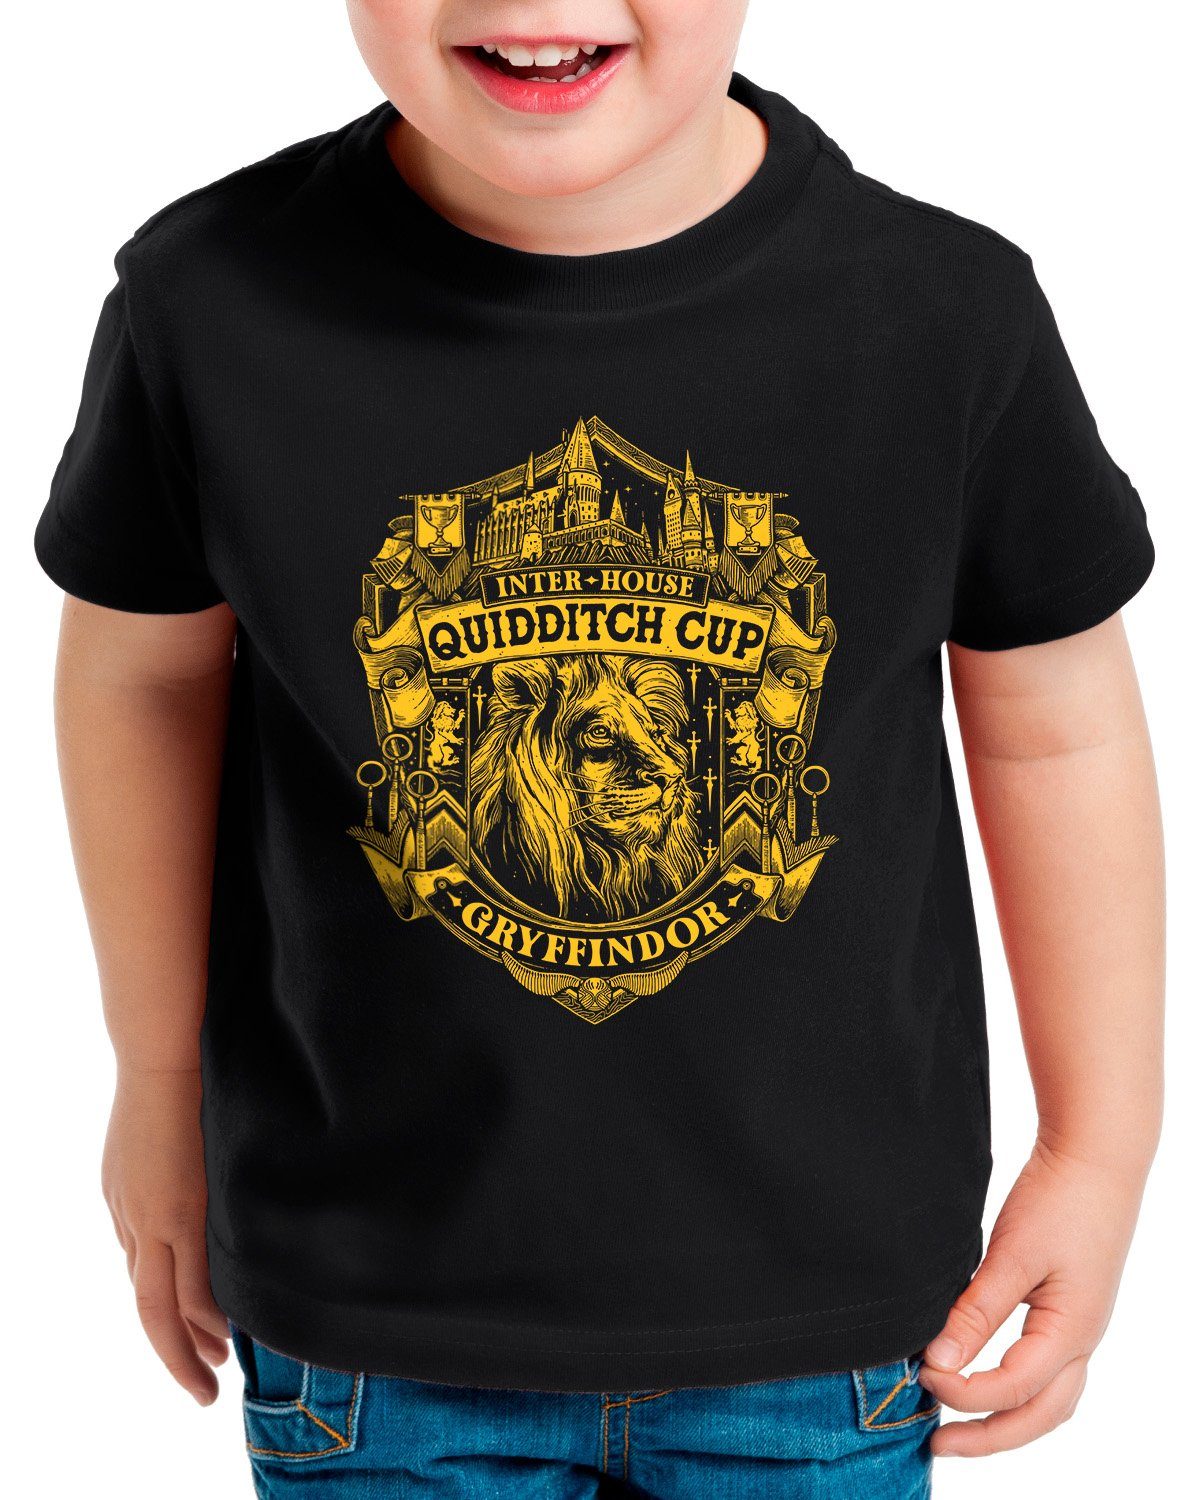 potter Mutigen Cup Kinder slytherin gryffindor Print-Shirt legacy der ravenclaw hufflepuff harry T-Shirt style3 hogwarts